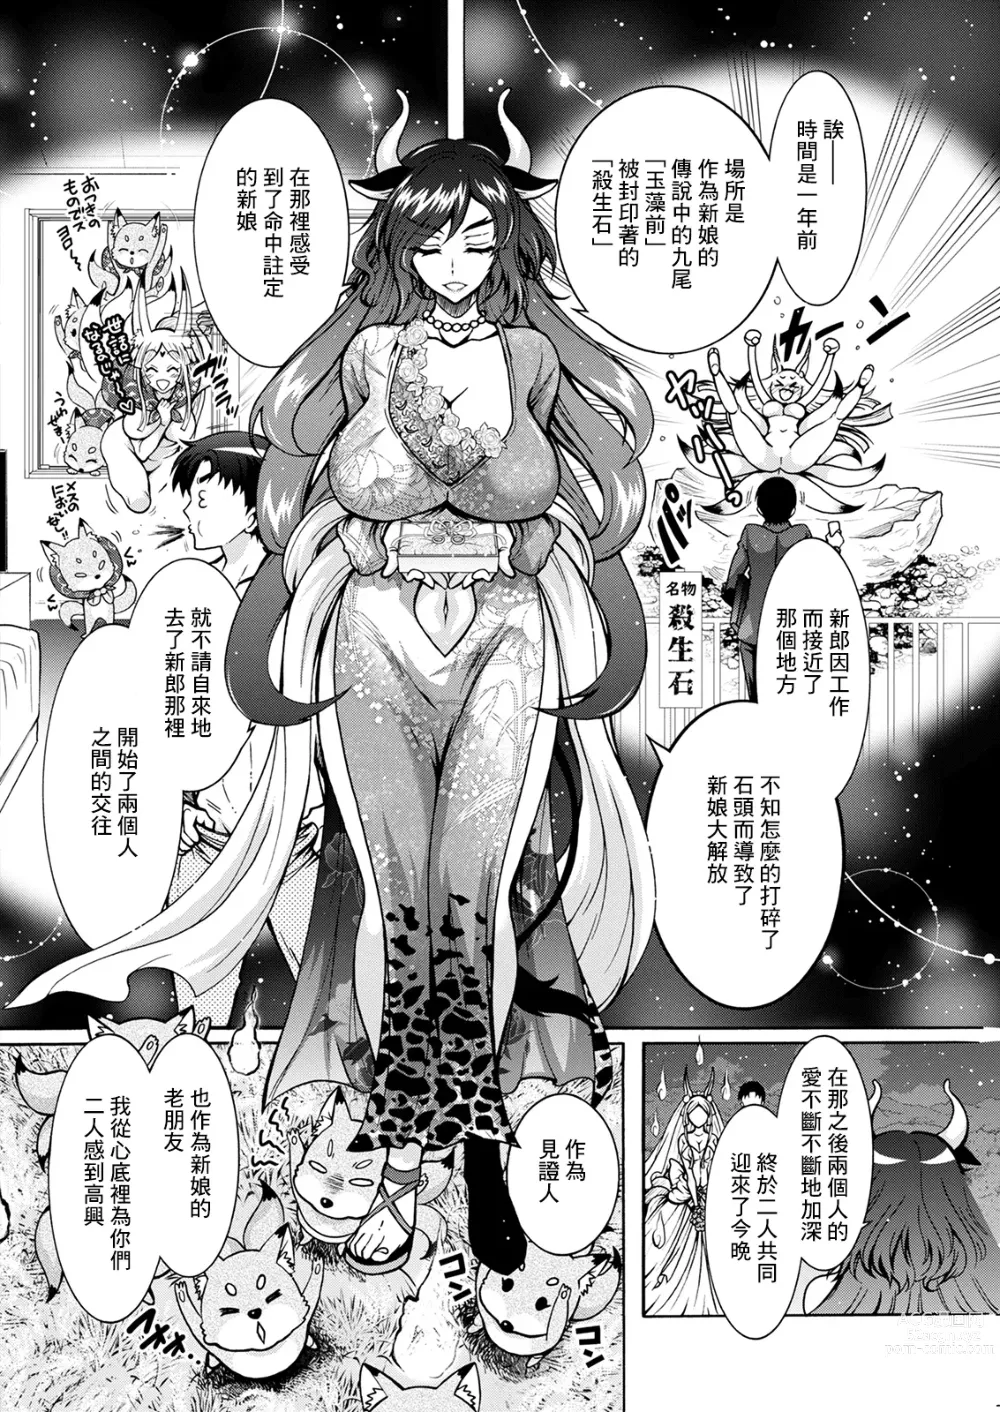 Page 4 of manga Youkai Ecchicchi Saishuuwa